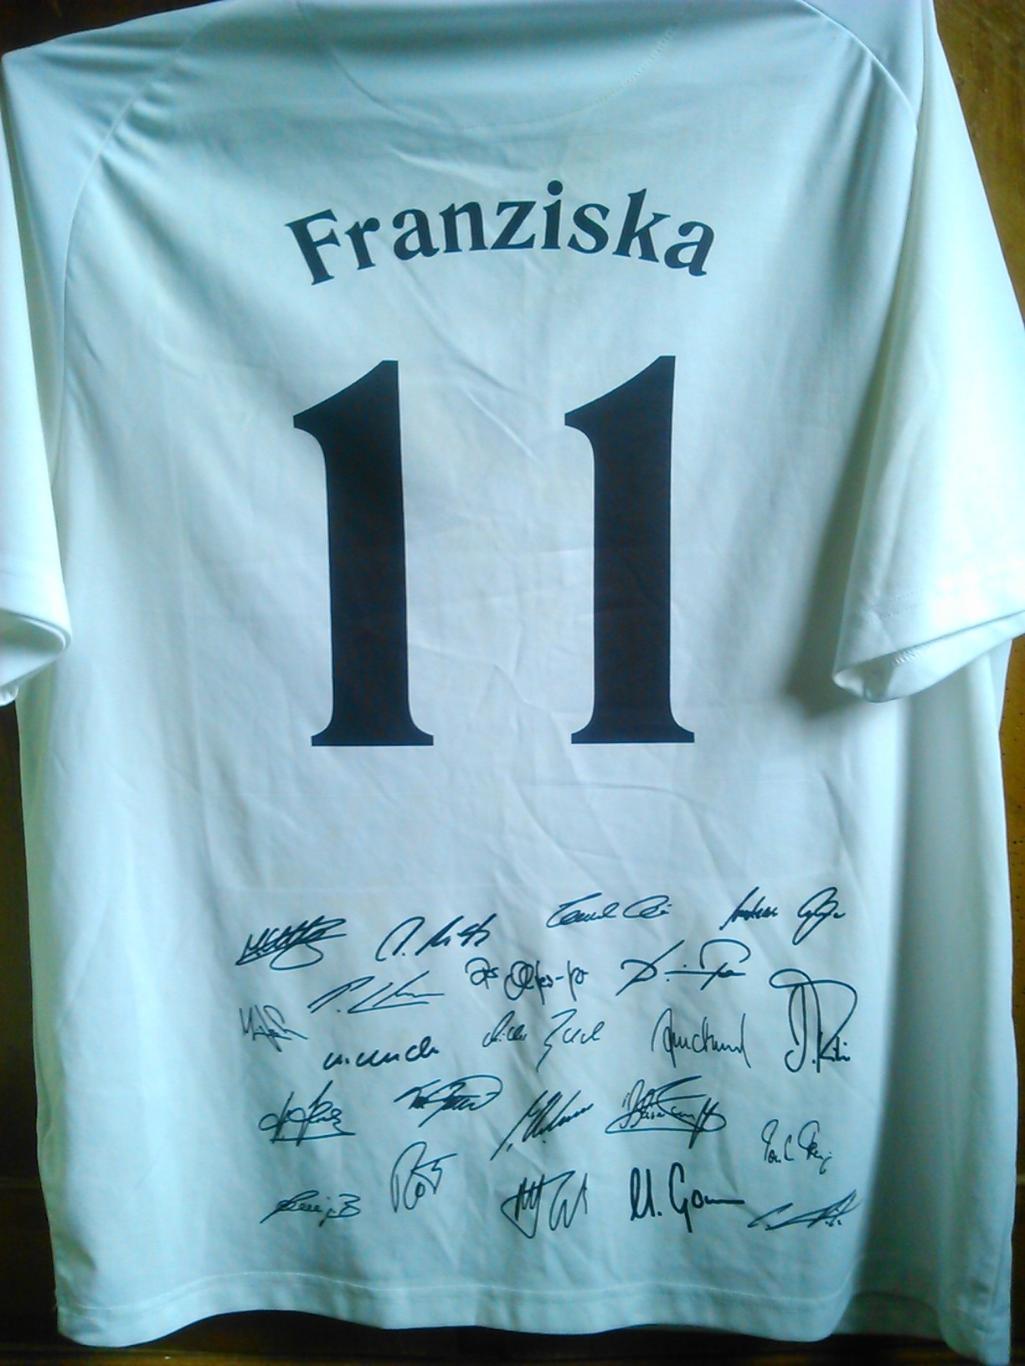 Автографы футболистов сборной Германии 2010 на футболке болельщика. Оптом скидки 1